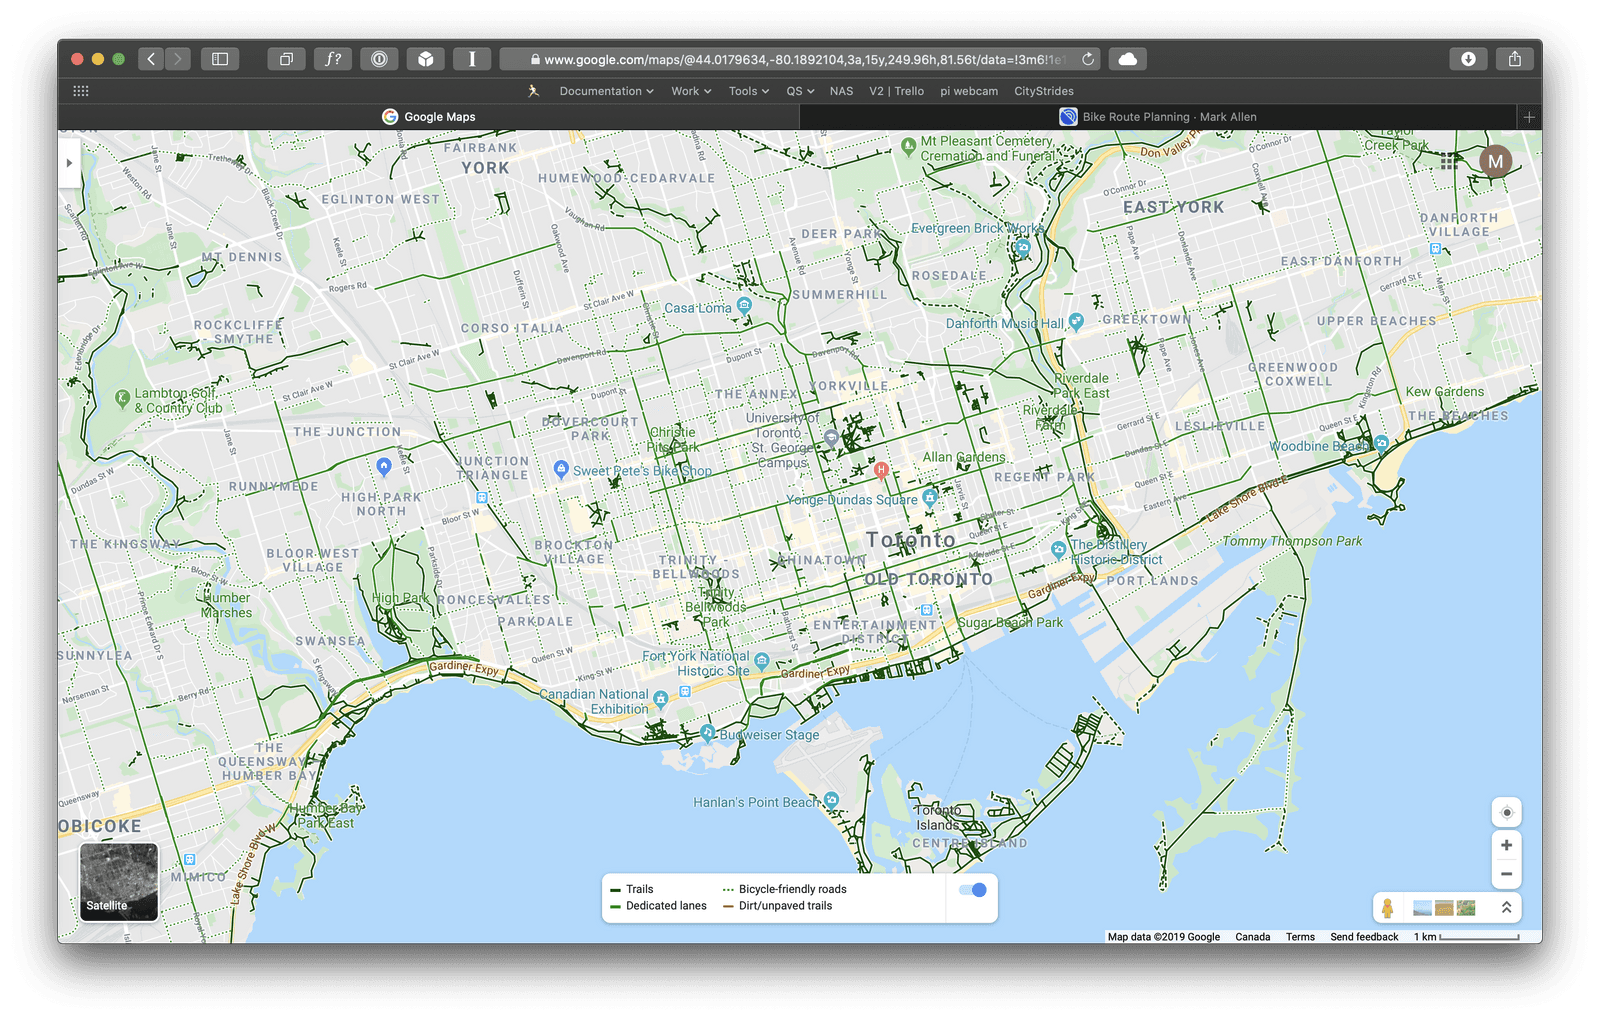 Bike-friendly streets in Toronto